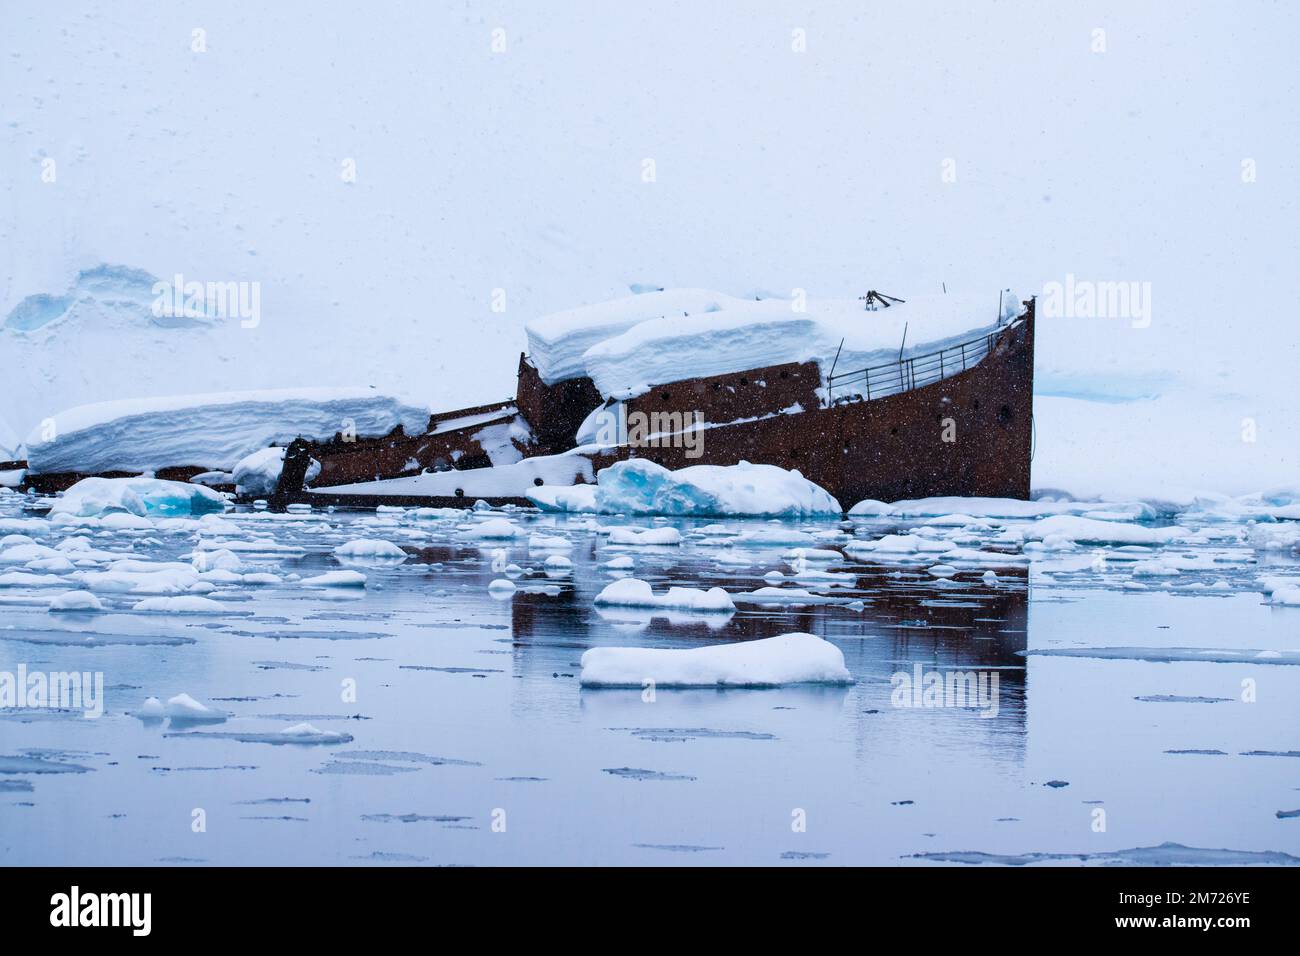 Un barco ballenero de metal se hundió en el agua helada alrededor de la Antártida, Foyn Harbor. Foto de stock